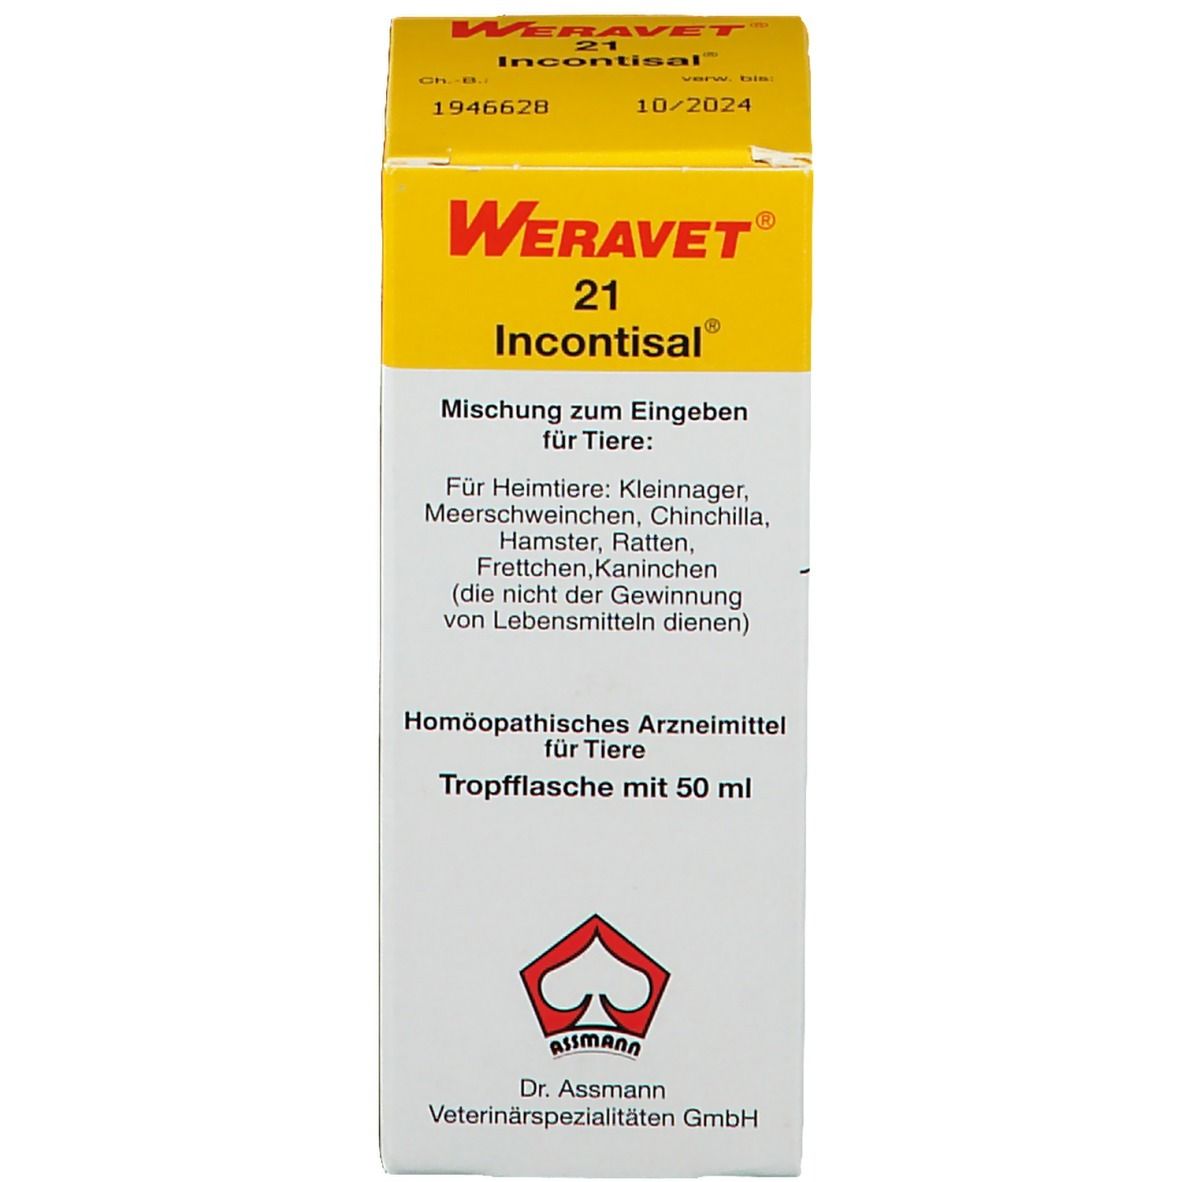 Weravet® 21 Incontisal für Heimtiere